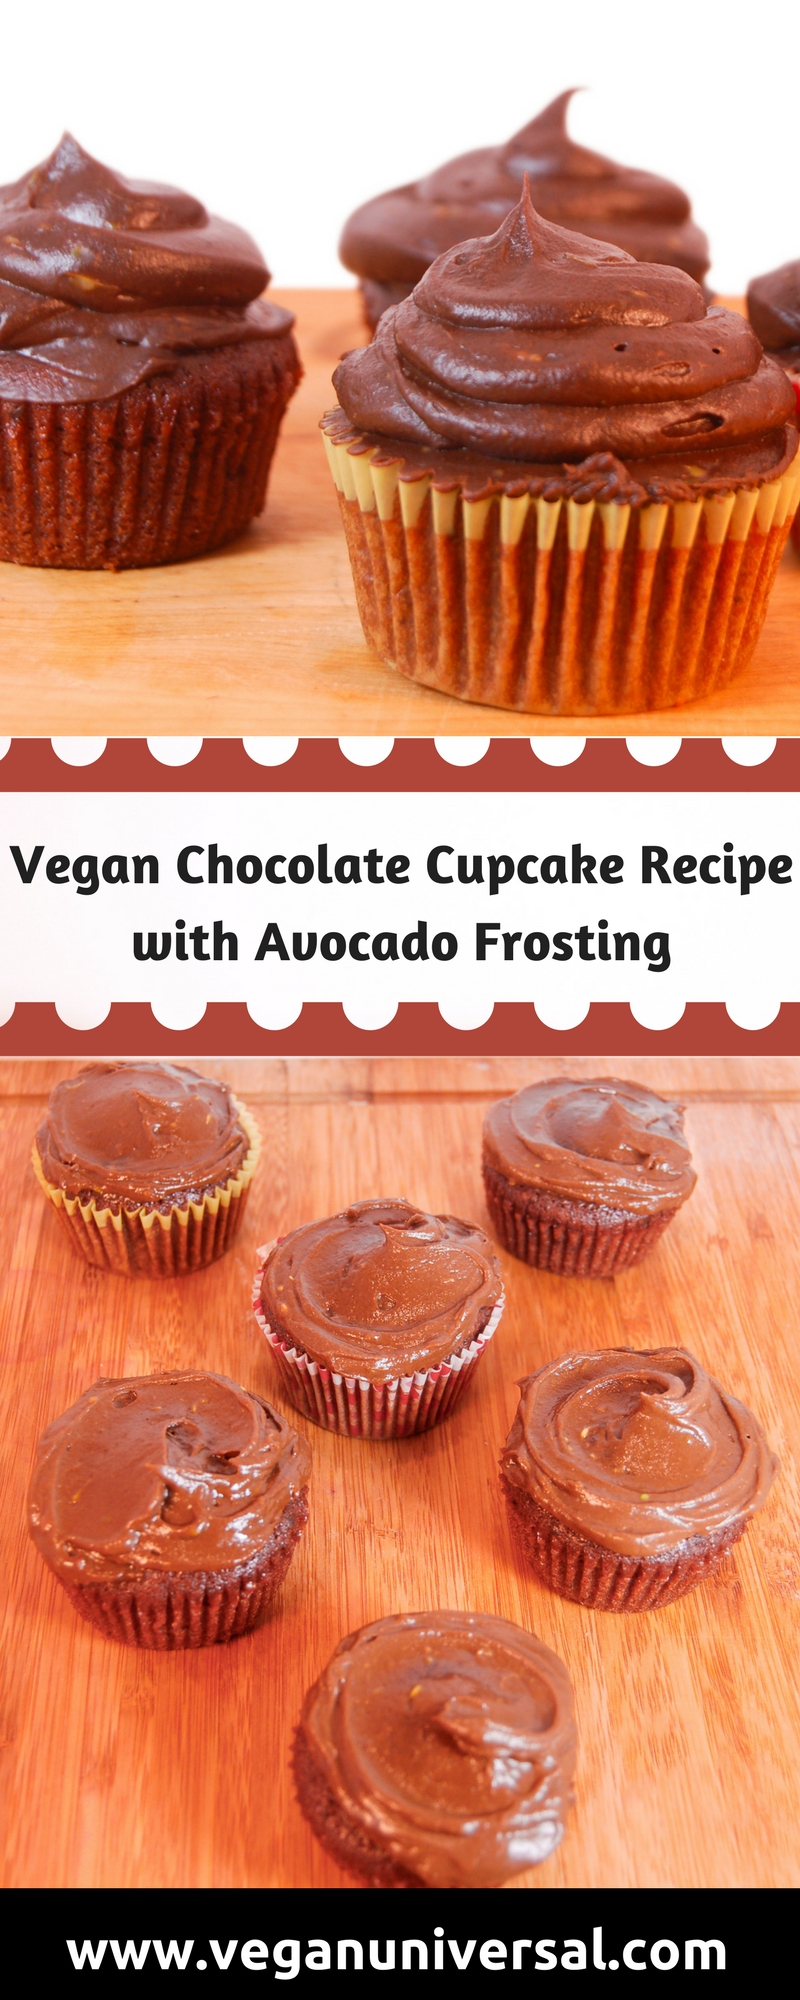 Vegan Chocolate Cupcake Recipe with Avocado Frosting